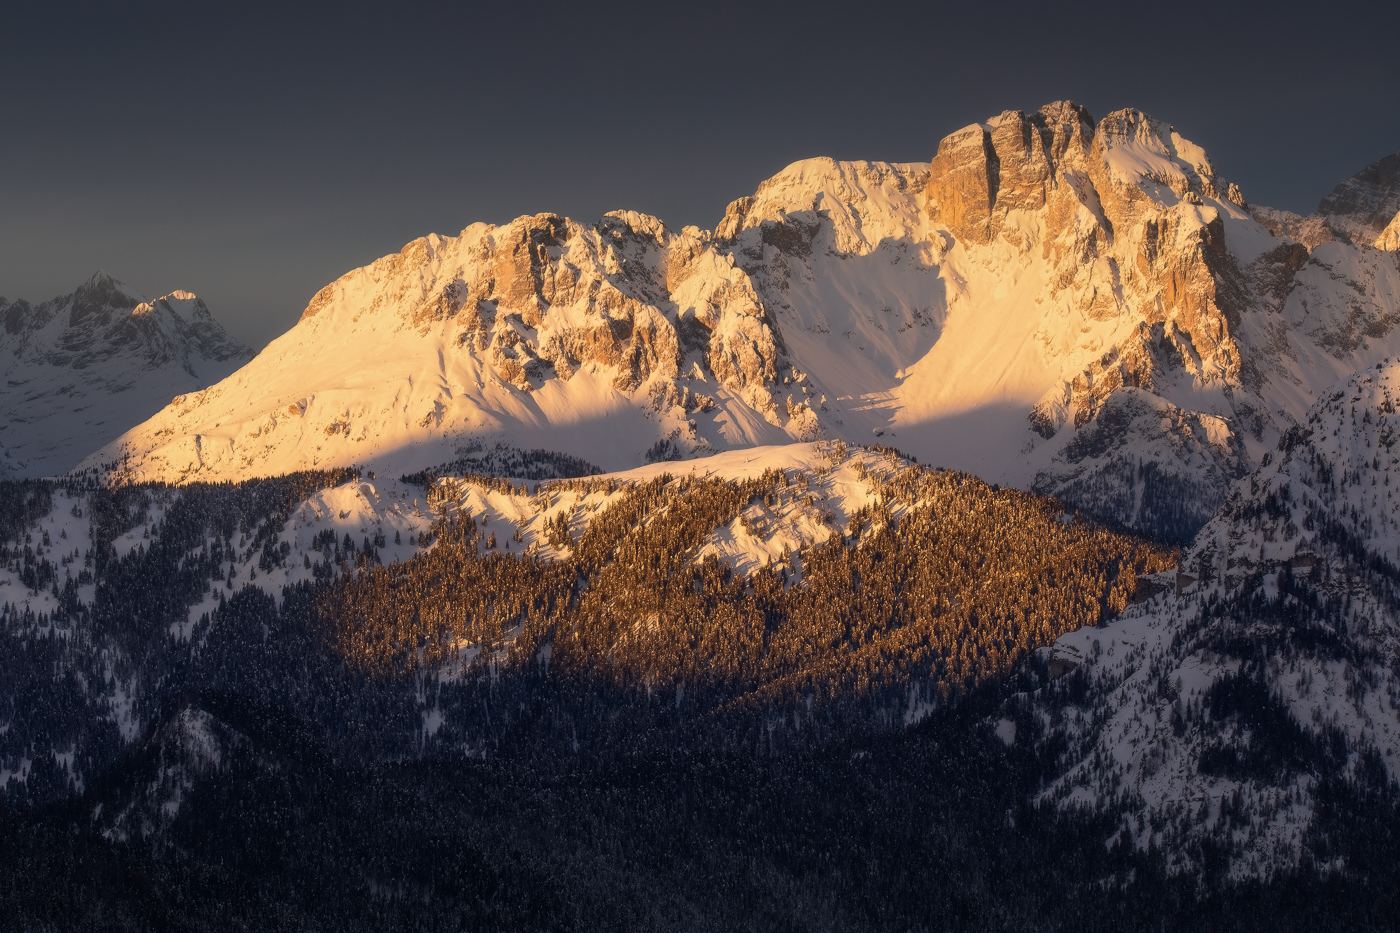 Il cielo plumbeo all’orizzonte risalta ancor di più la lucentezza di un’alba tanto attesa in uno scenario gelido. Alpi Carniche e Dolomiti, Italia.